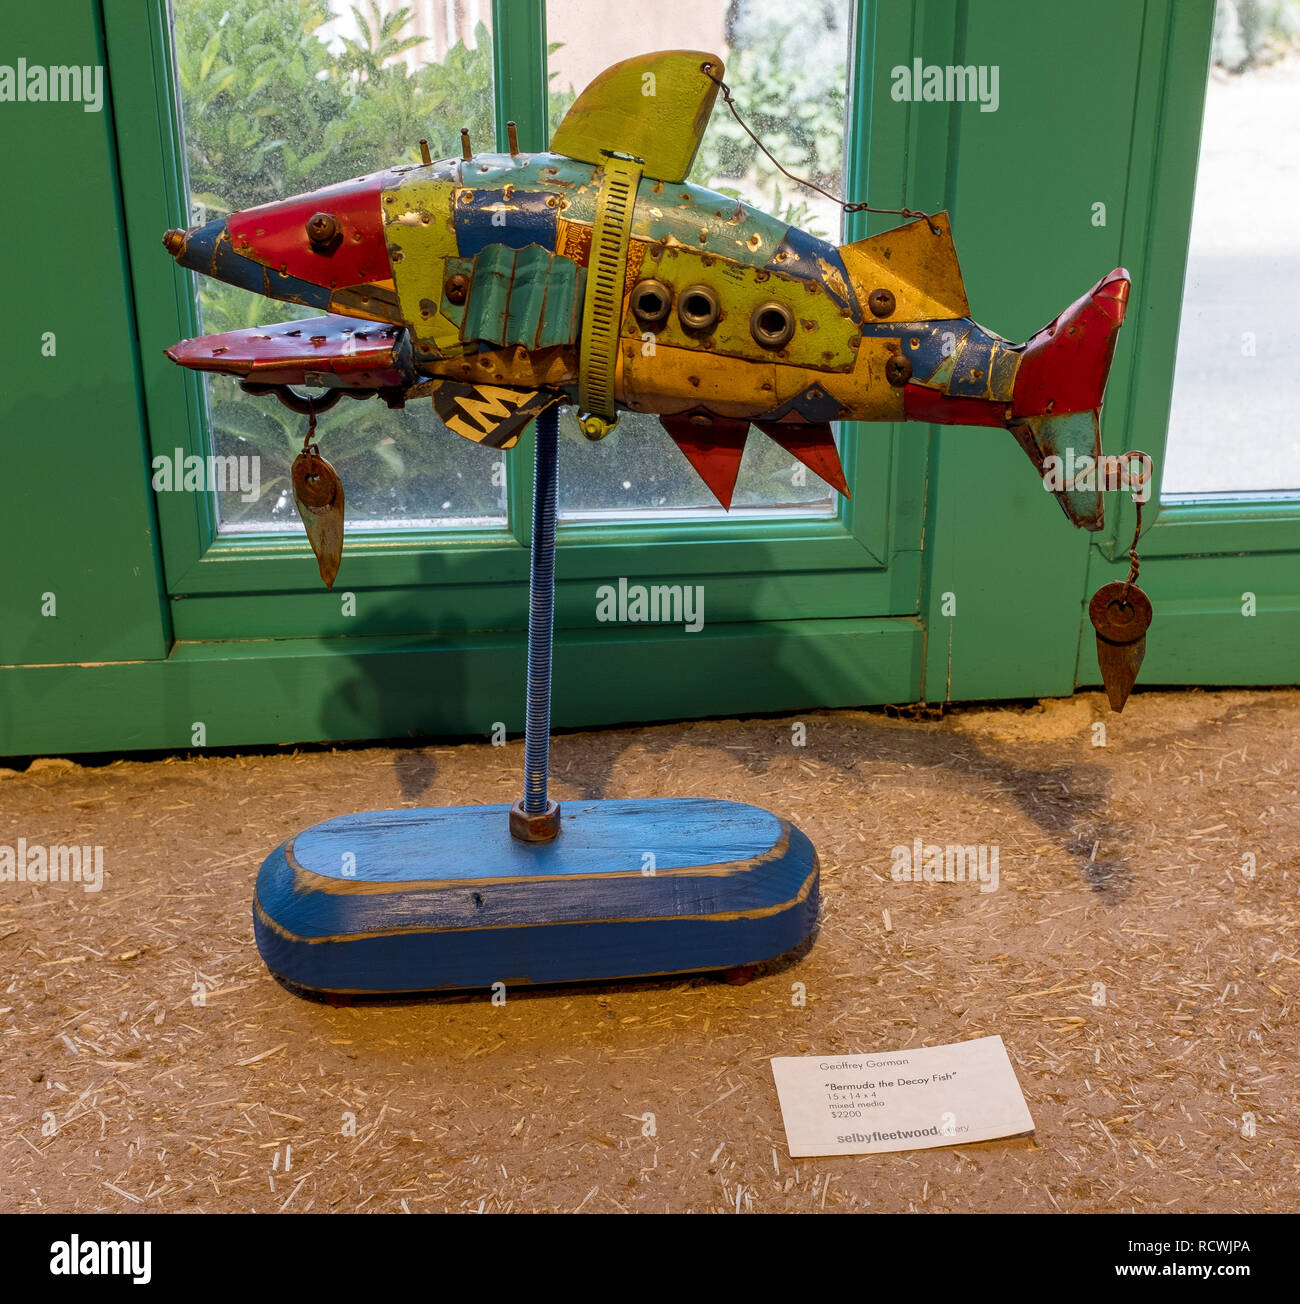 Mixed media Bildhauer Geoffrey Gorman: "Bermuda den Köder Fisch' Stockfoto